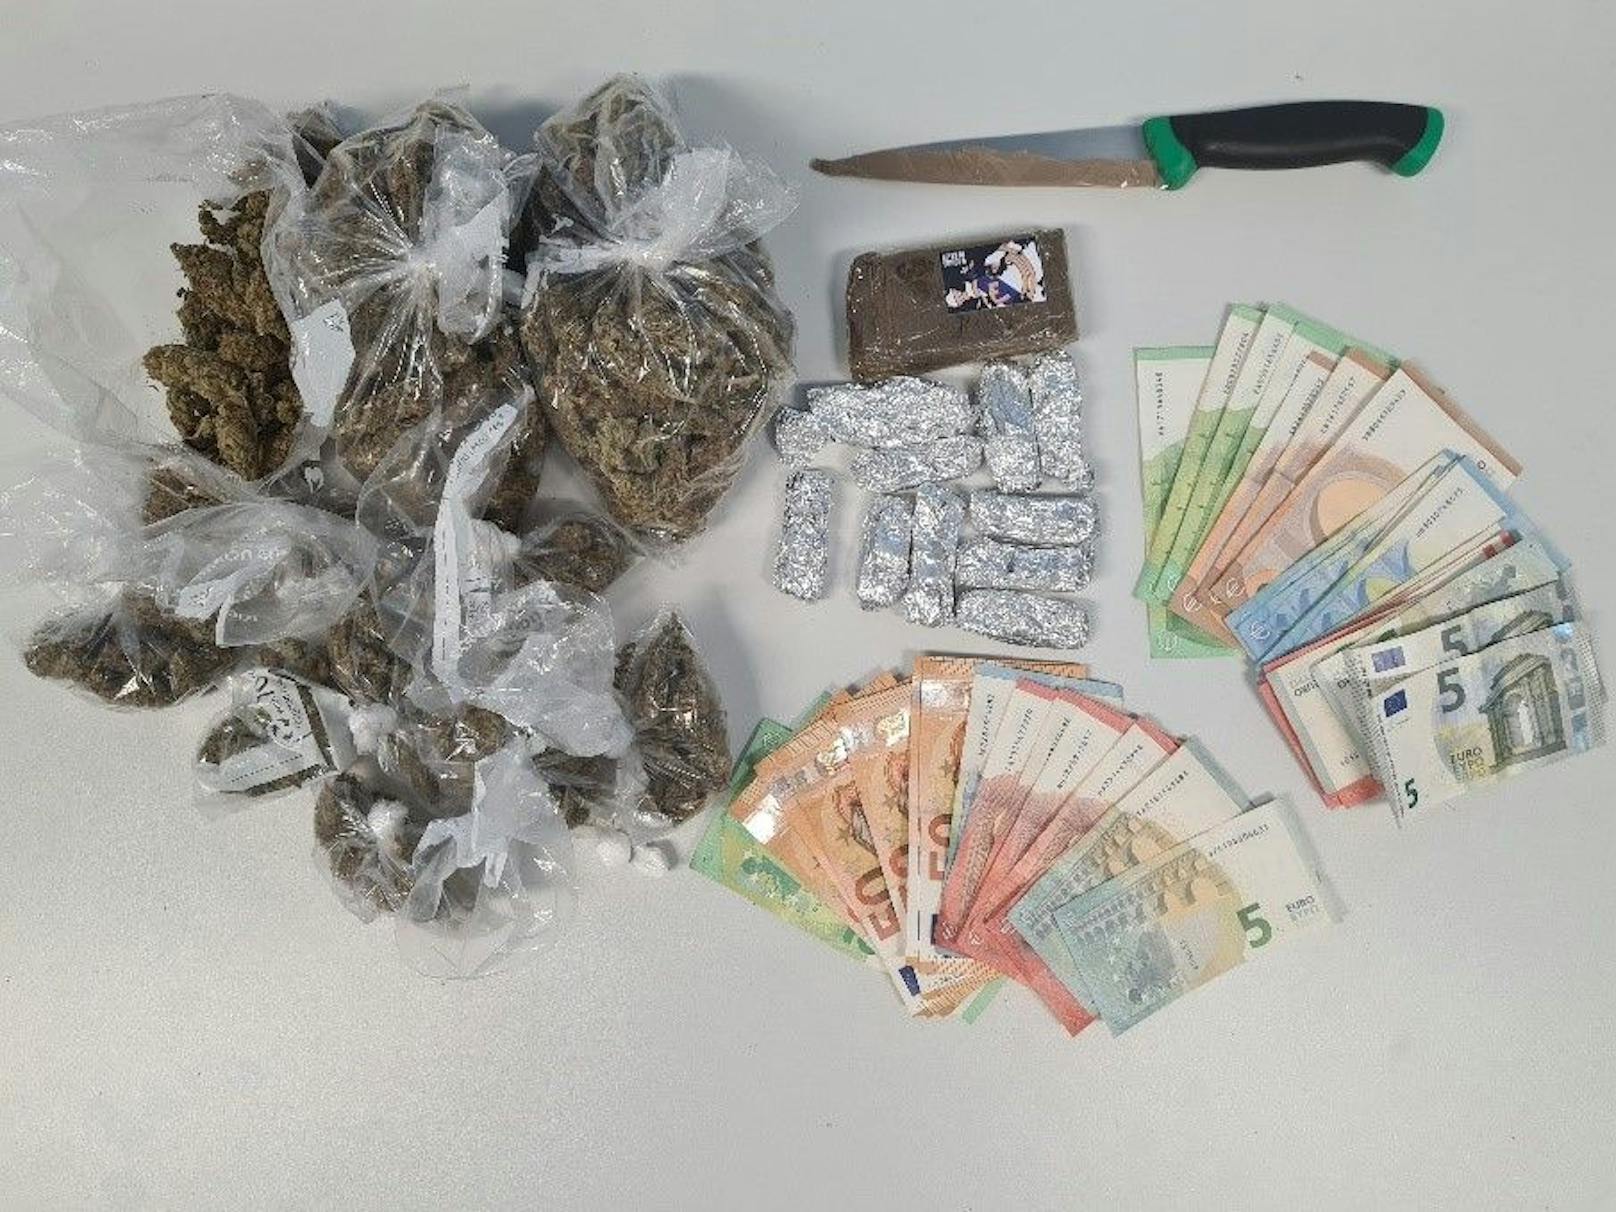 Die Wiener Polizei konnte 4200 Cannabispflanzen, 451 Kilogramm Cannabis, 51 Kilogramm Heroin, 4,5 Kilogramm Kokain, 944 Stück Tabletten Ecstasy, 342.000 Euro Bargeld sicherstellen und 1001 Personen festnehmen. 